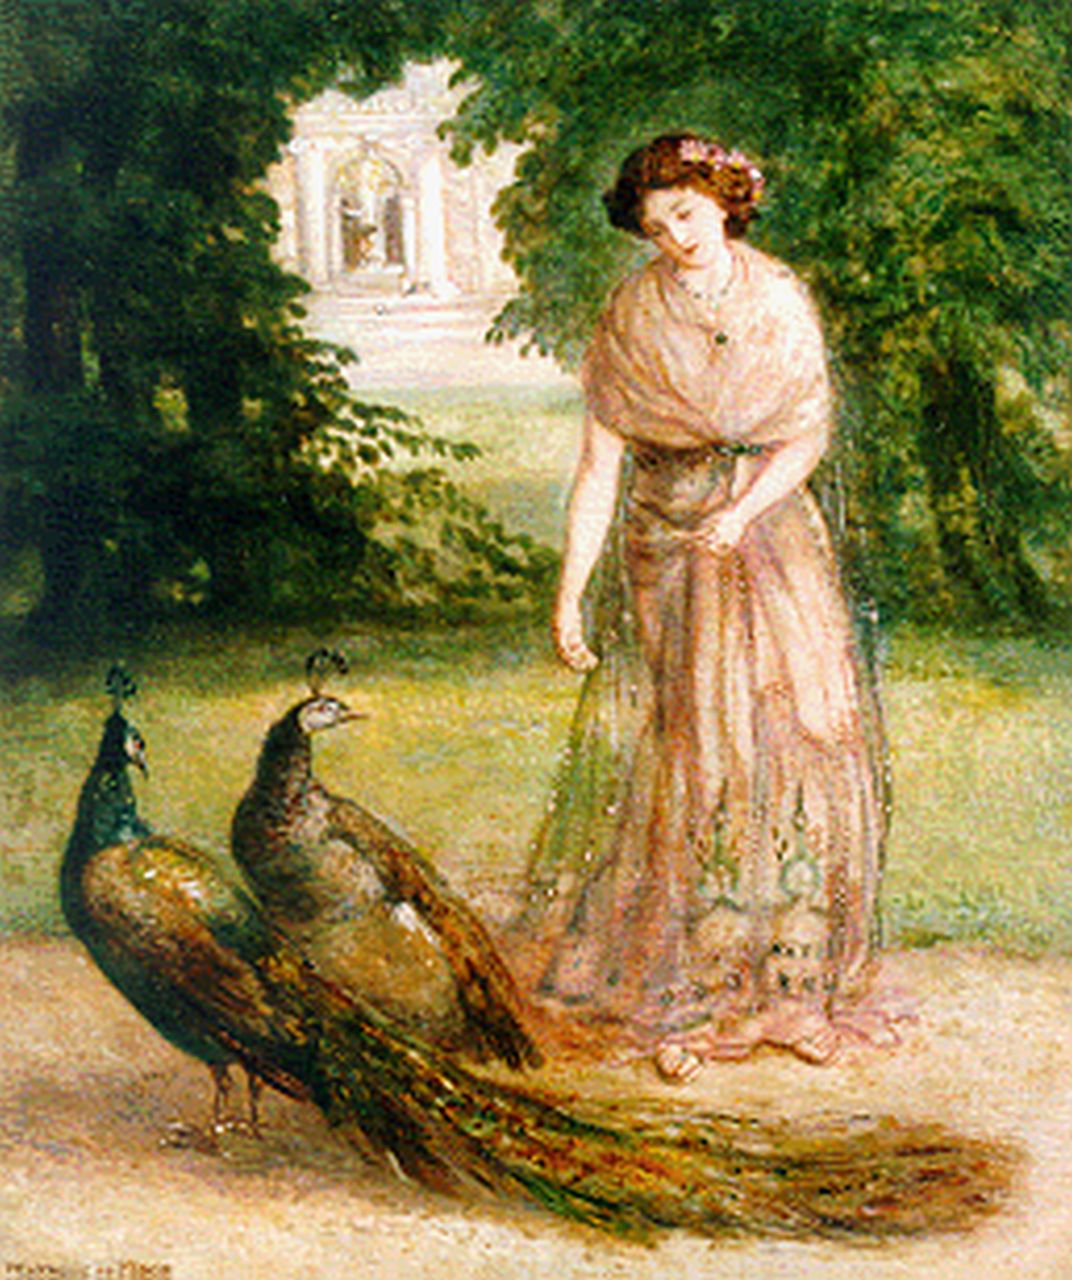 Moor P.C. de | Pieter Cornelis de Moor, Elegante dame, die de pauwen voert, olieverf op doek 38,5 x 32,0 cm, gesigneerd linksonder